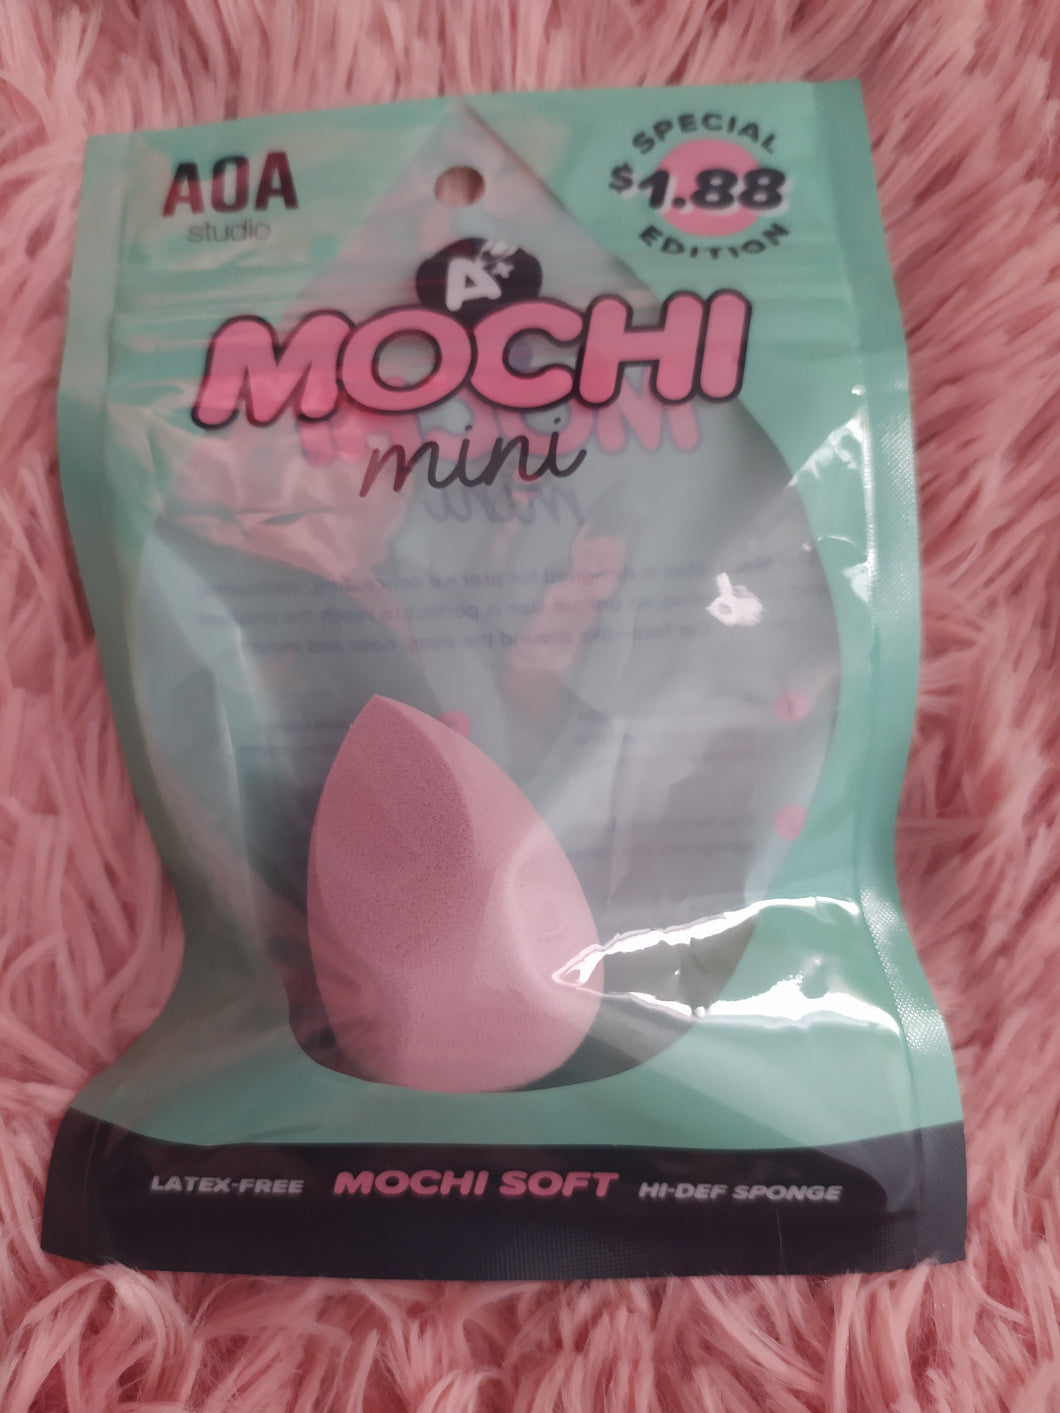 AOA - Mochi mini sponge